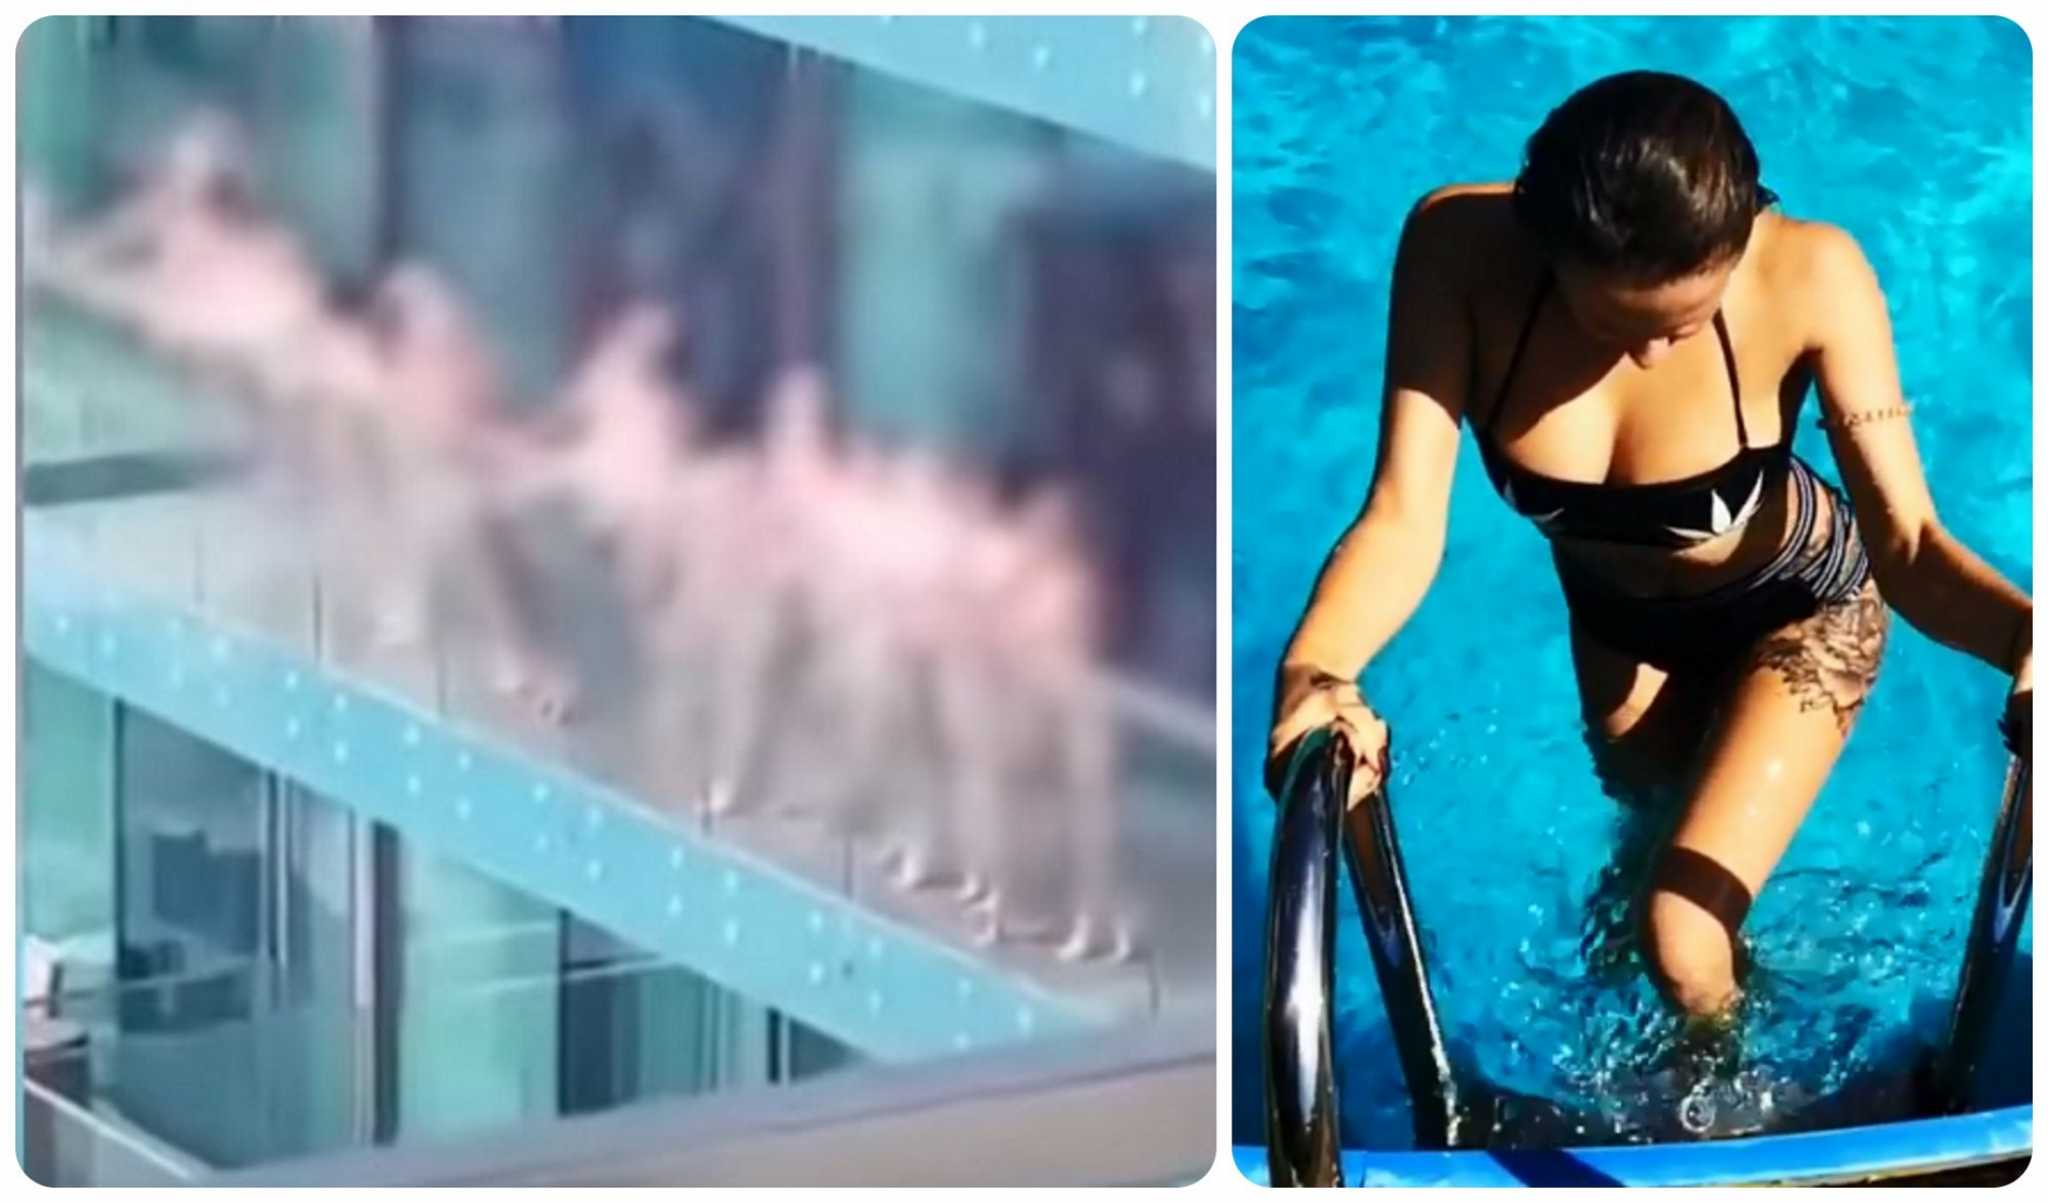 Ντουμπάι: Απέλαση για τα γυμνά «μοντέλα» που πόζαραν σε μπαλκόνι! video